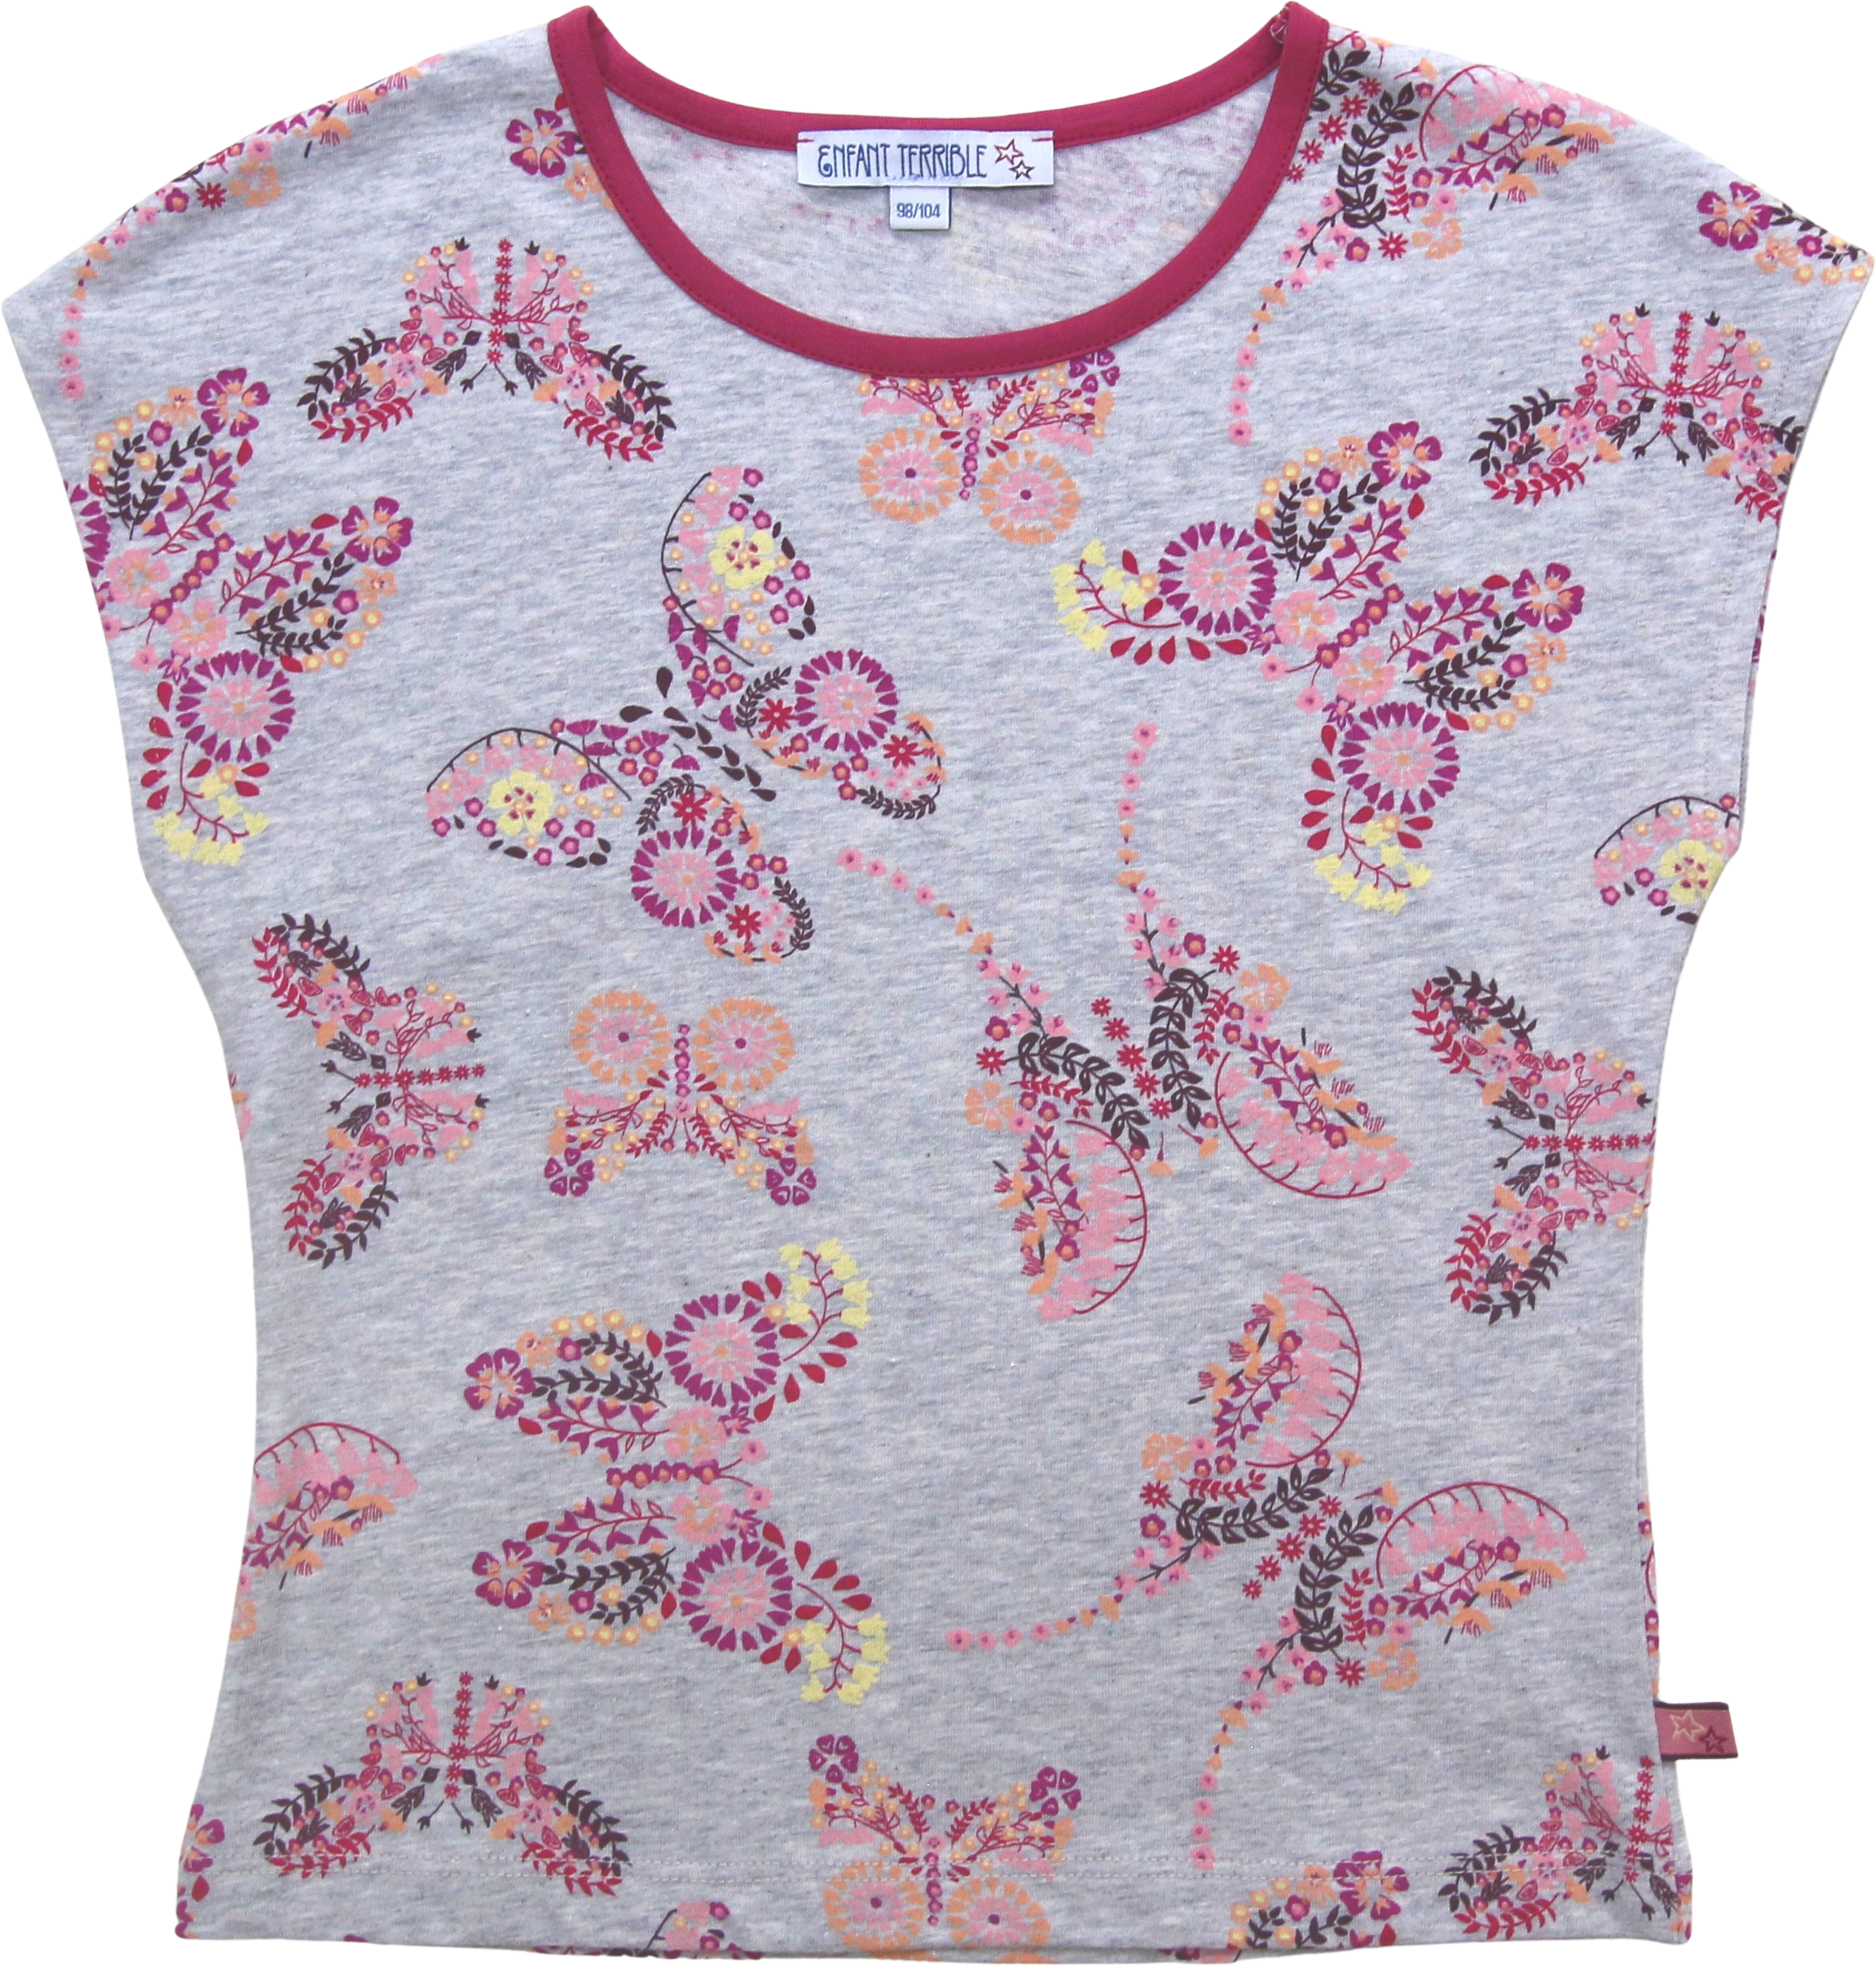 Gemustertes Shirt mit Schmetterlingen silvermelange